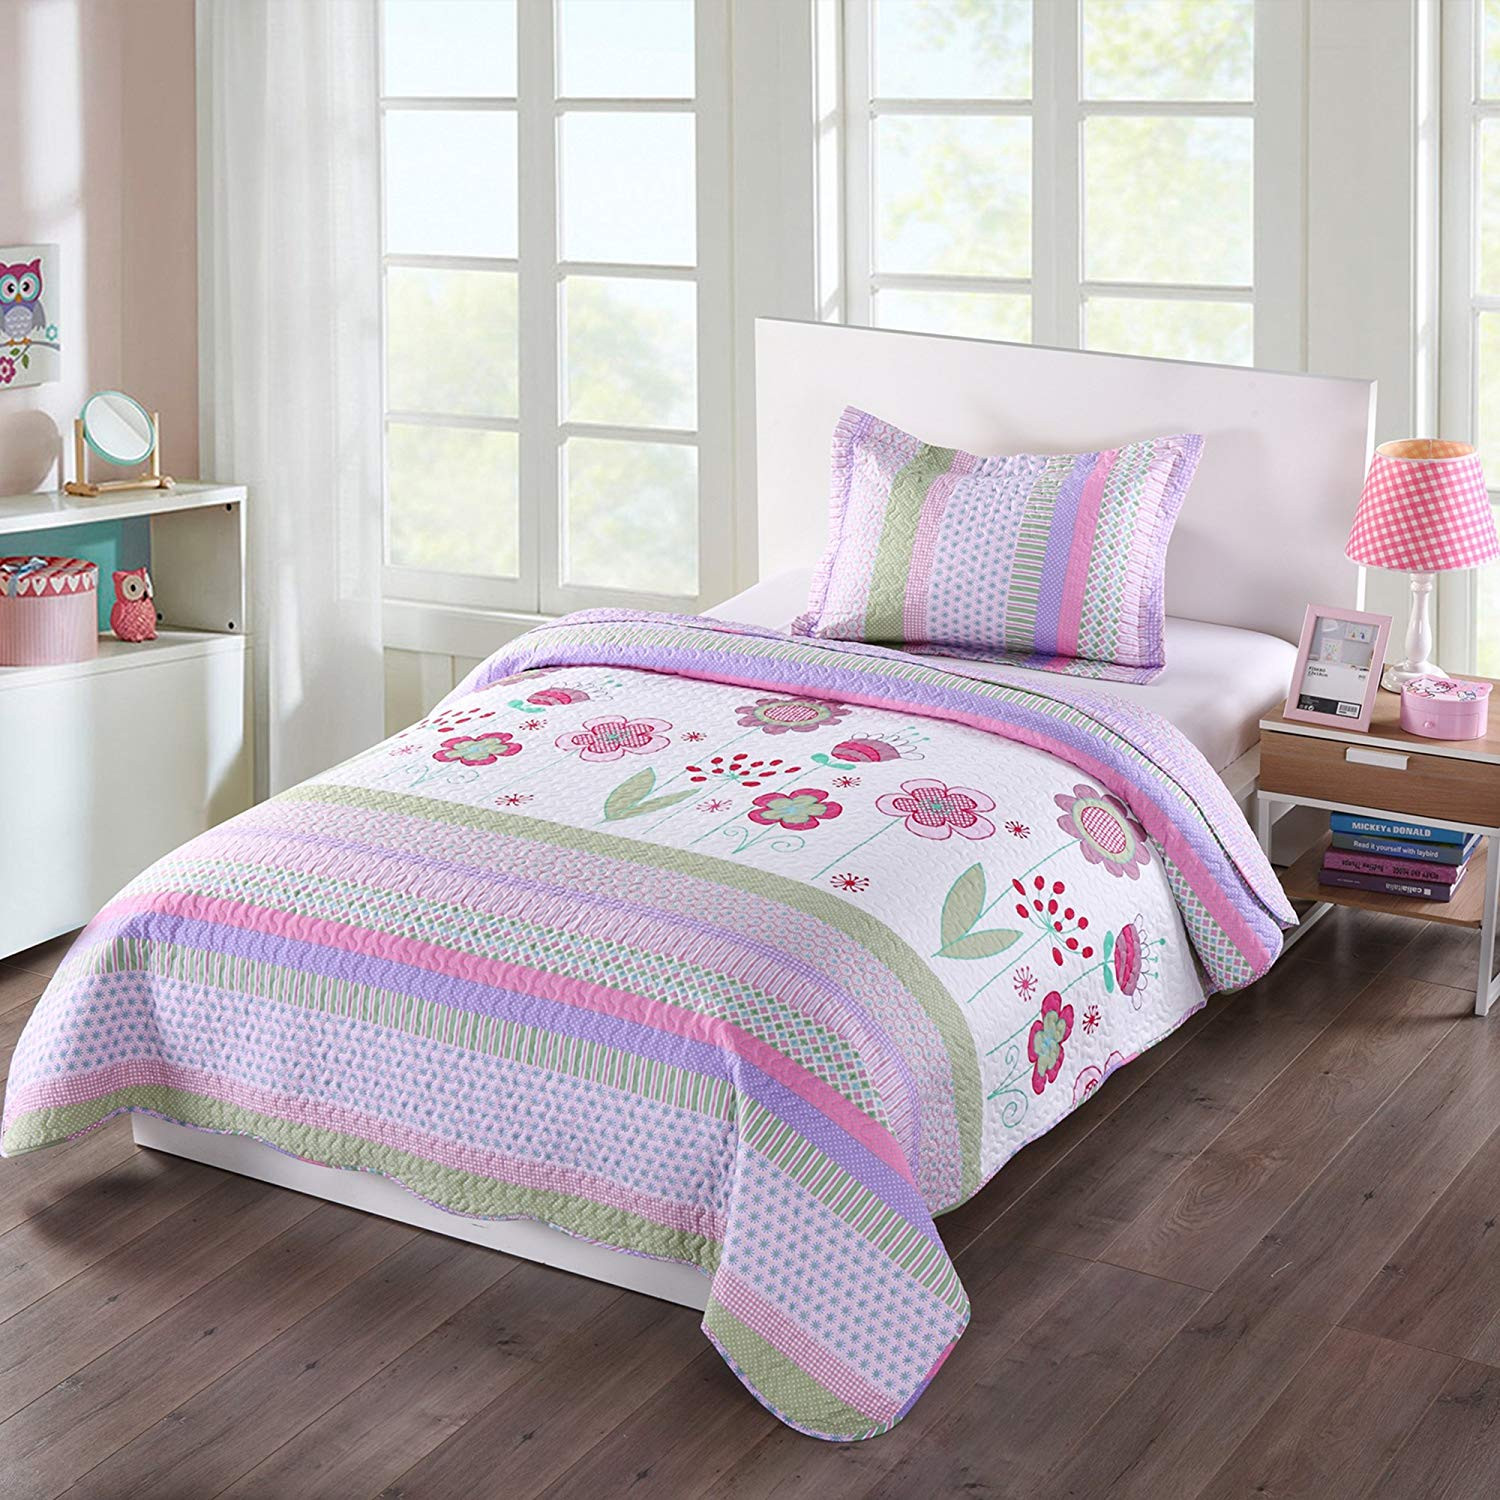 Walmart Girl Bedroom Sets
 MarCielo 2 Piece Kids Bedspread Quilts Set Throw Blanket